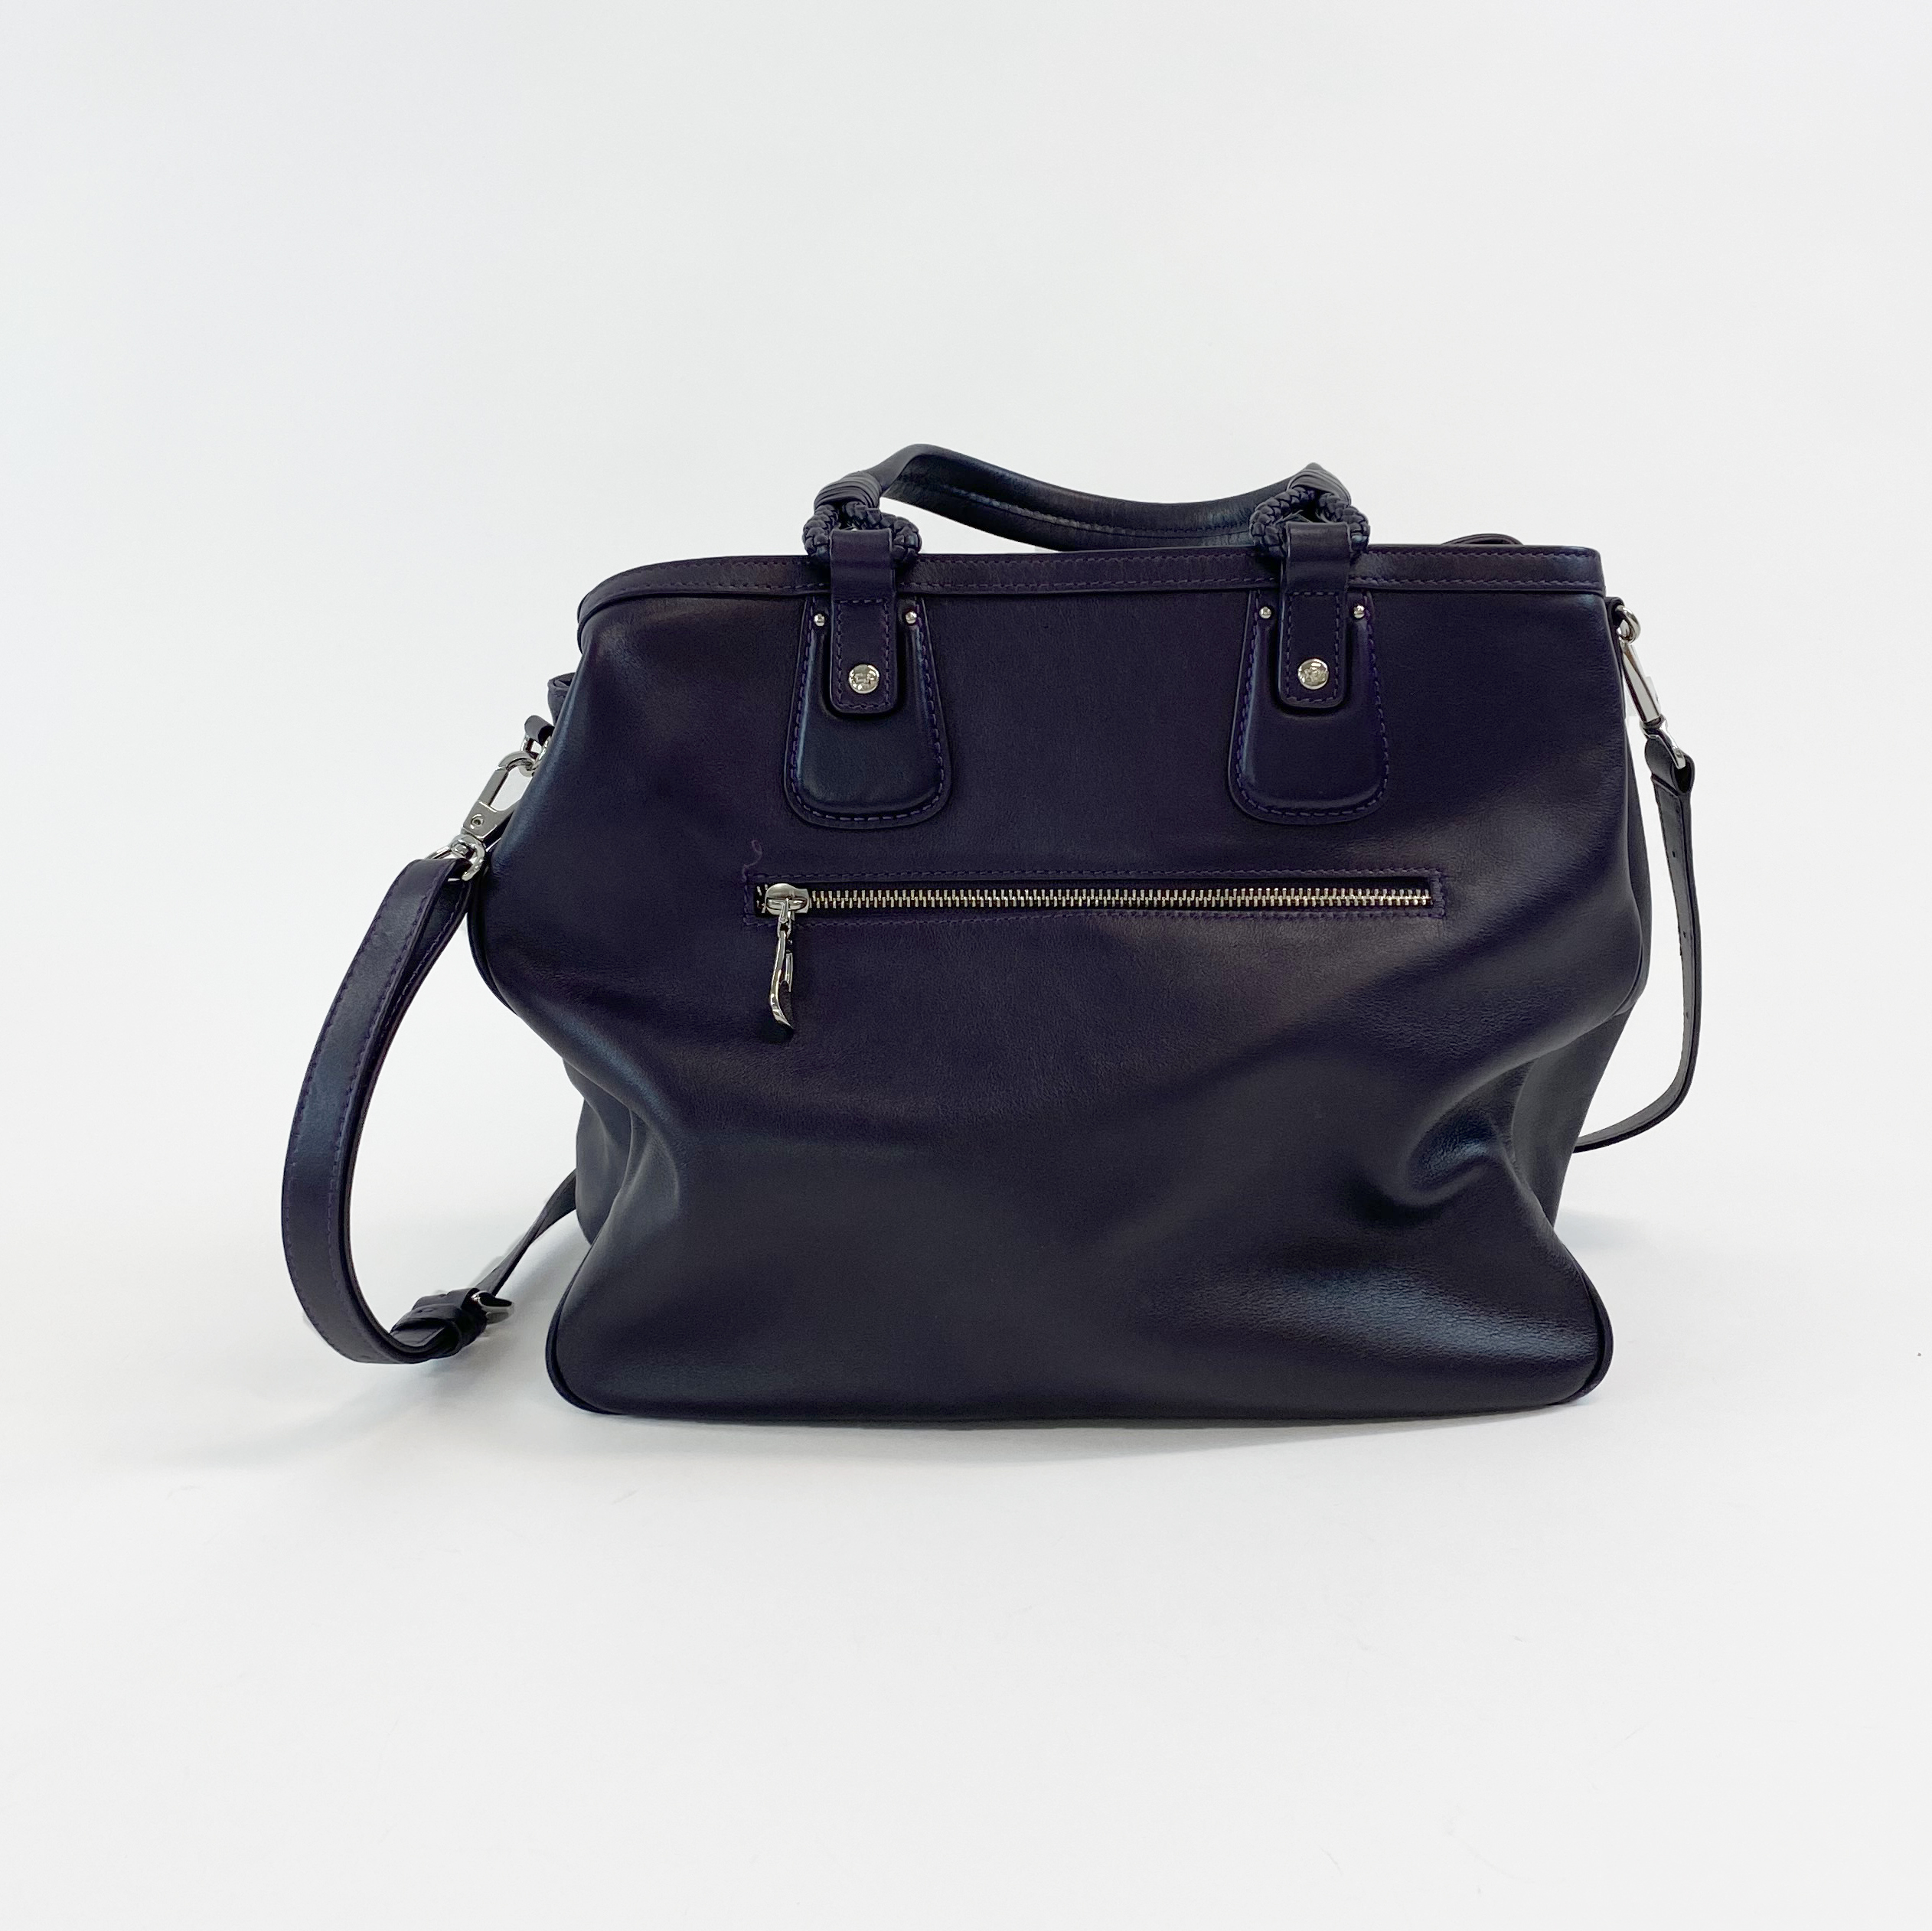 Braun Buffel Soft Leather Handbag